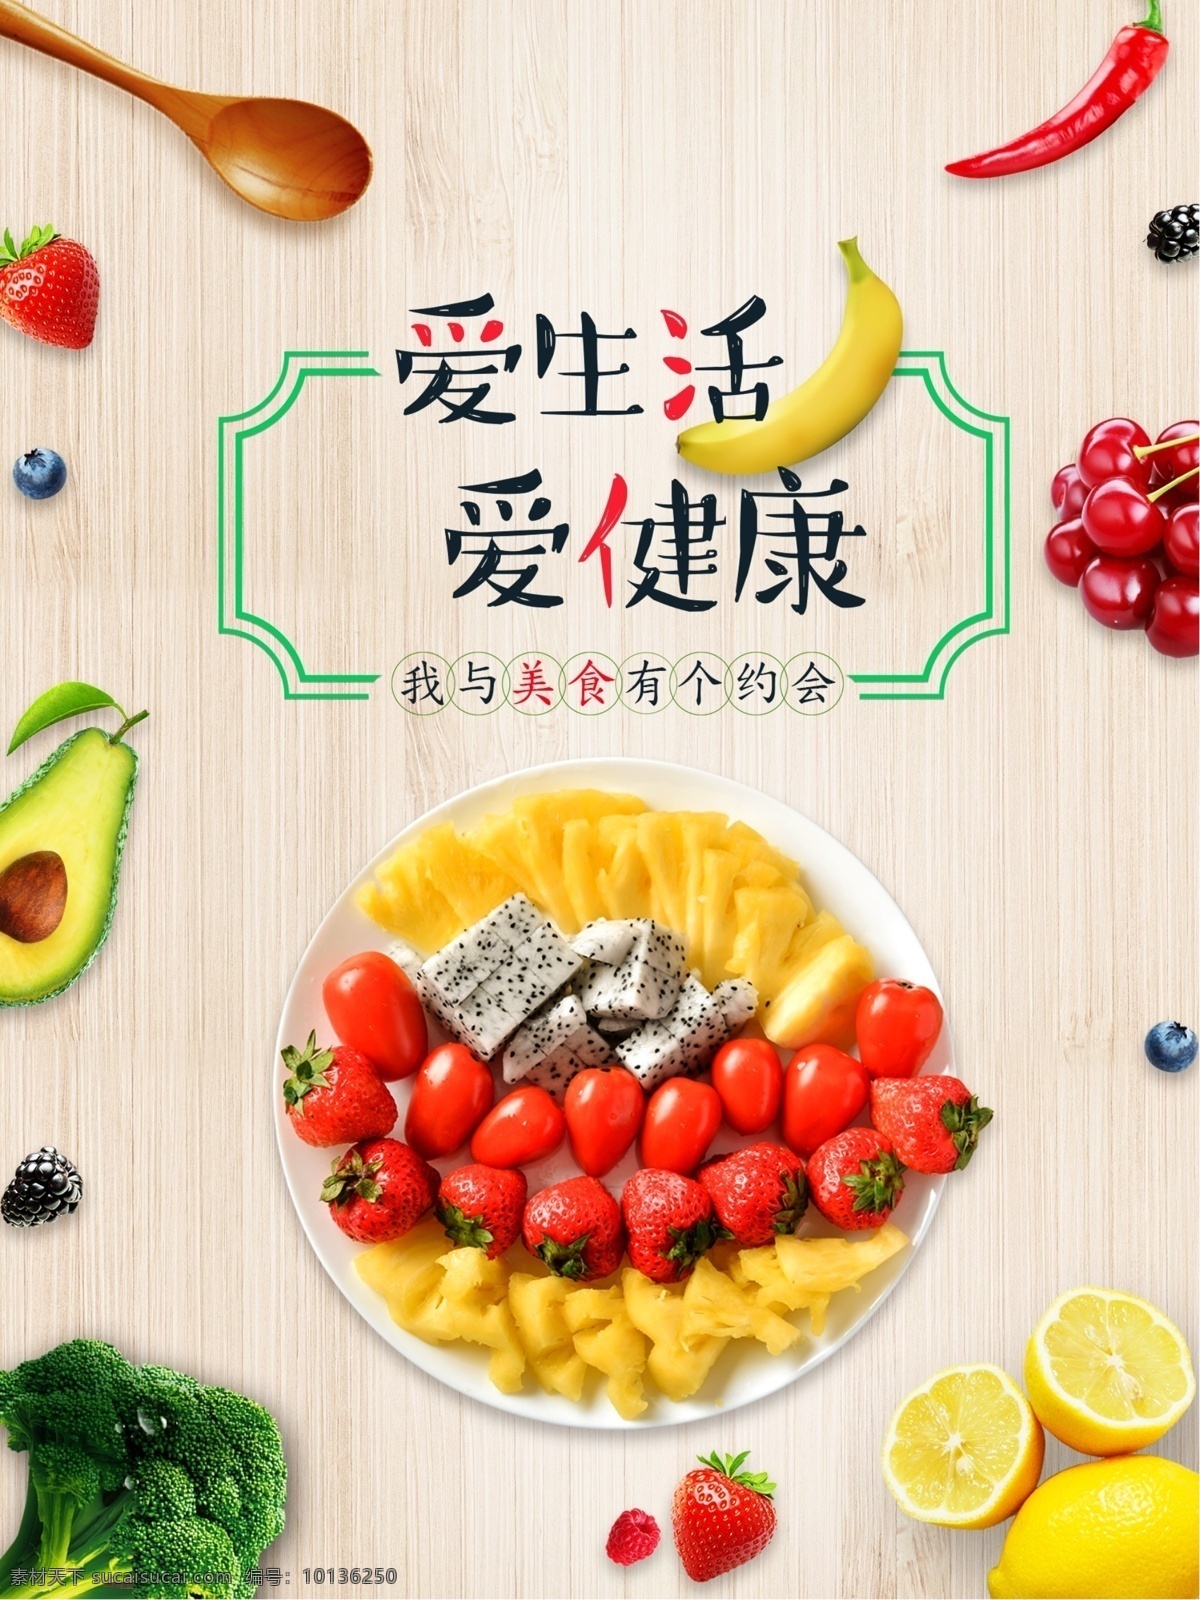 清新 简约 爱 生活 健康 美食 海报 约会 葡萄 蔬菜 爱生活 爱健康 沙拉 水果